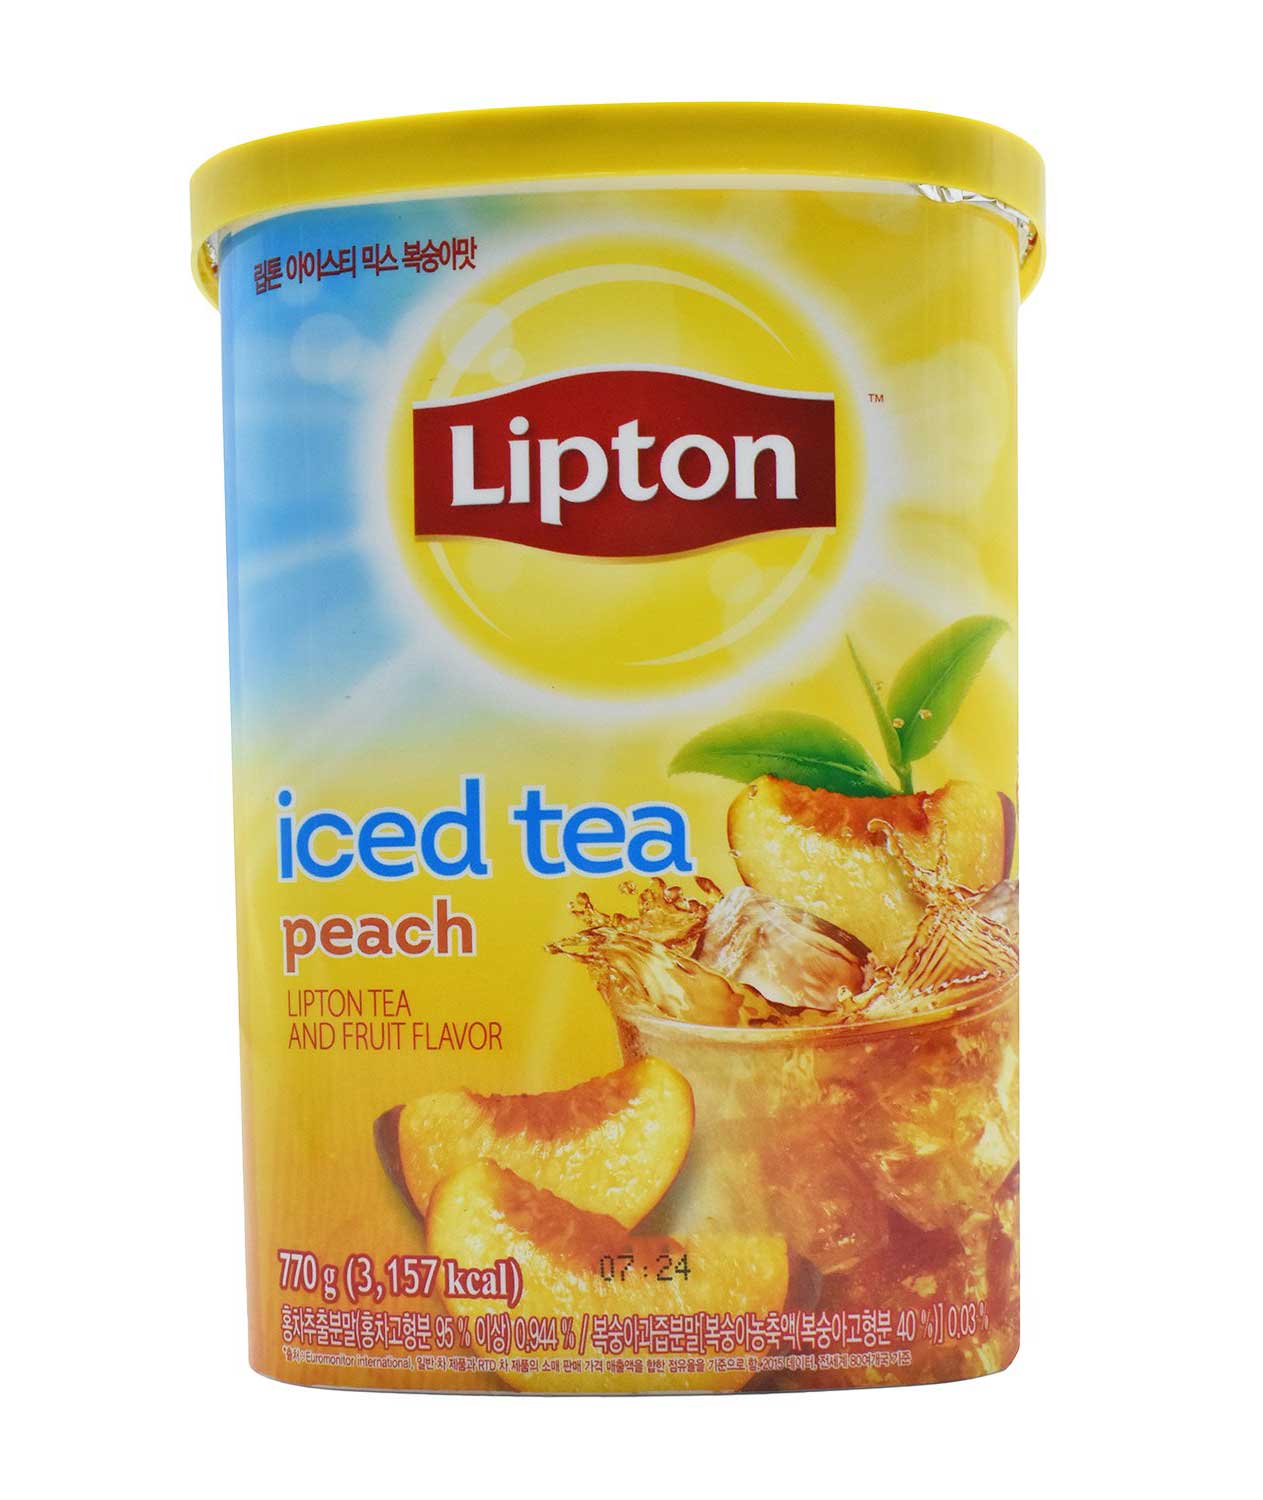 Lipton Iced Tea Peach Tea and Fruit Flavour (770 g)